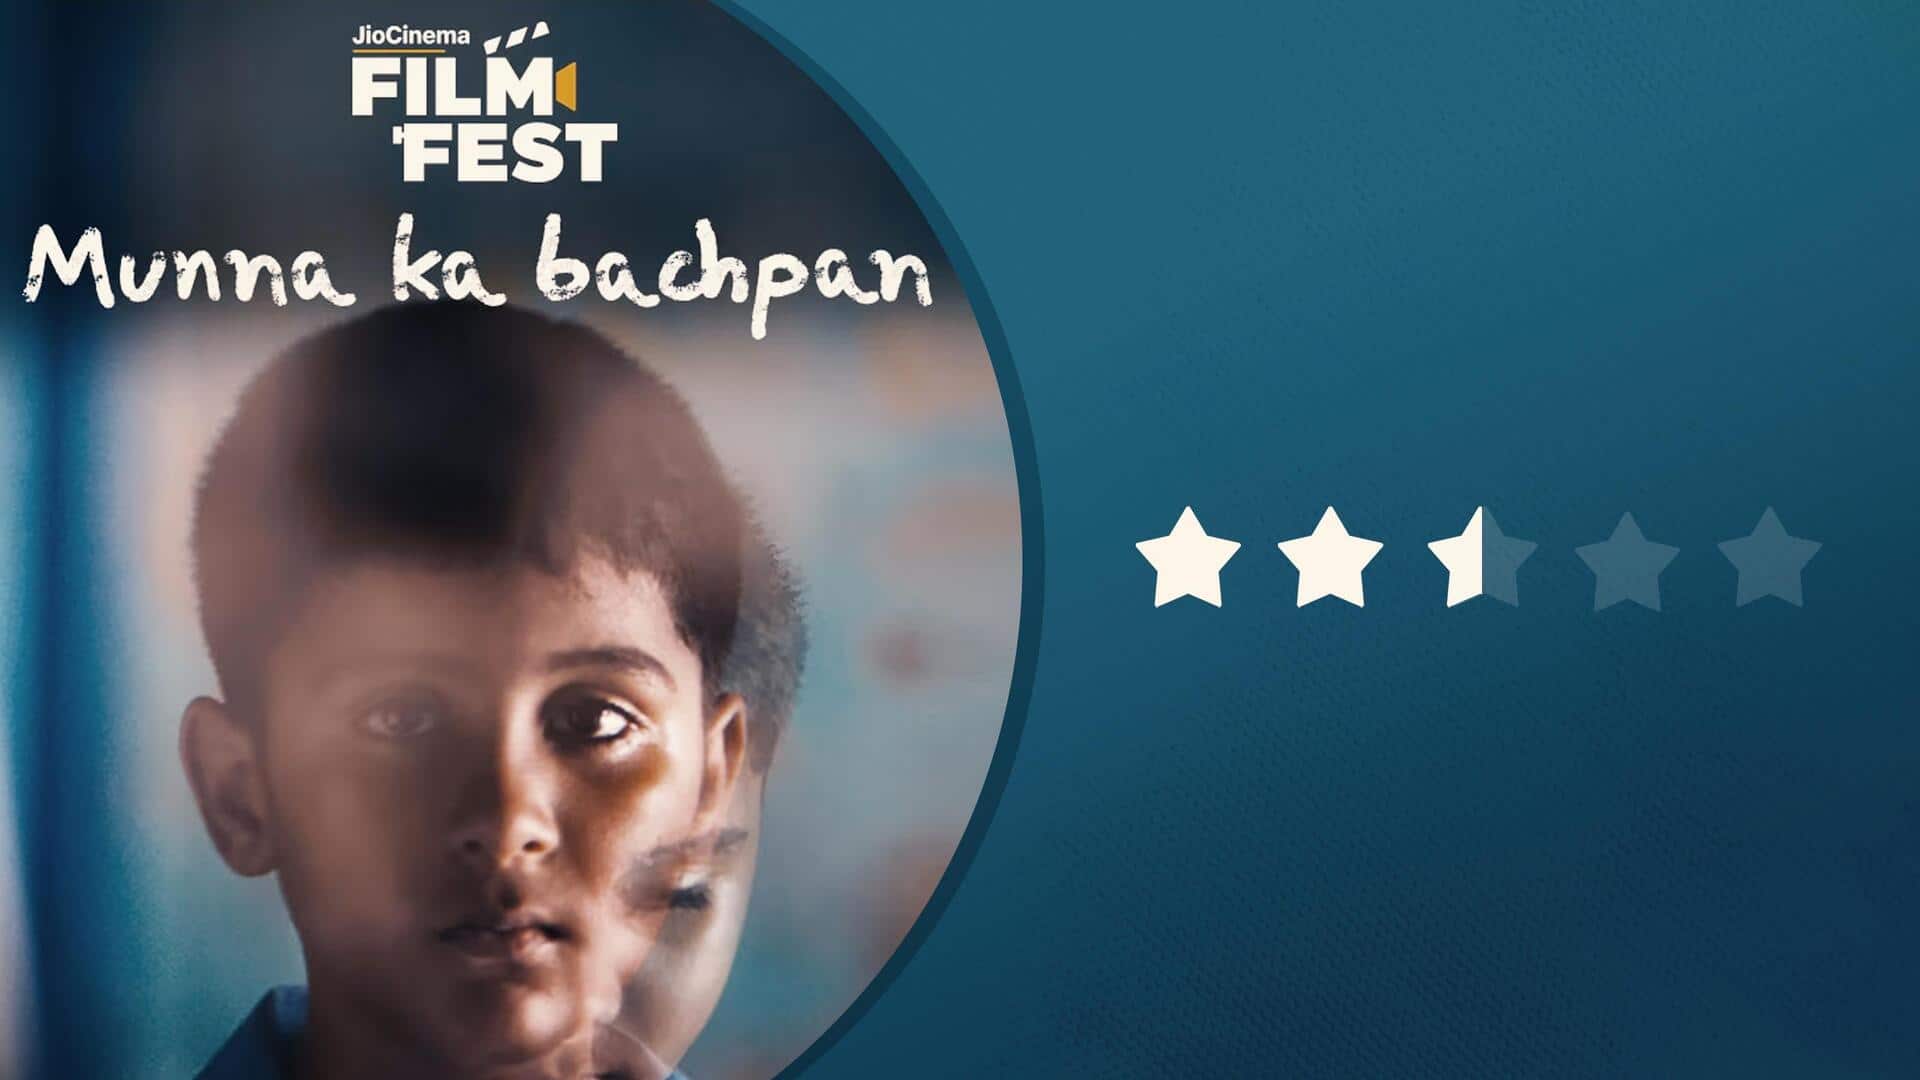 'Munna Ka Bachpan' review: Explores violence's ramifications; lacks character development